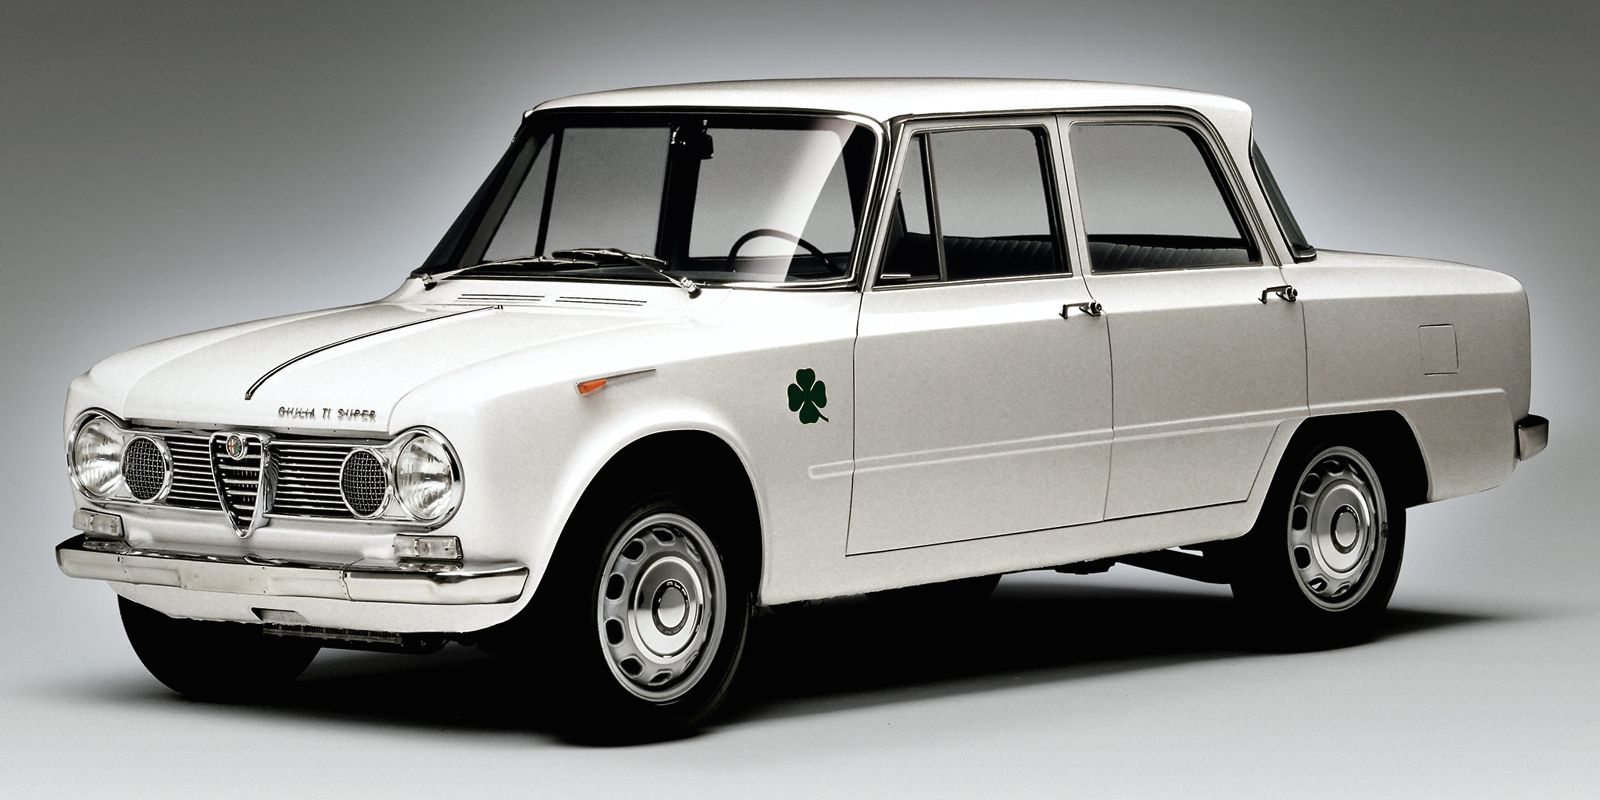 Fourteen of the Coolest Italian Sedans Ever Built pic